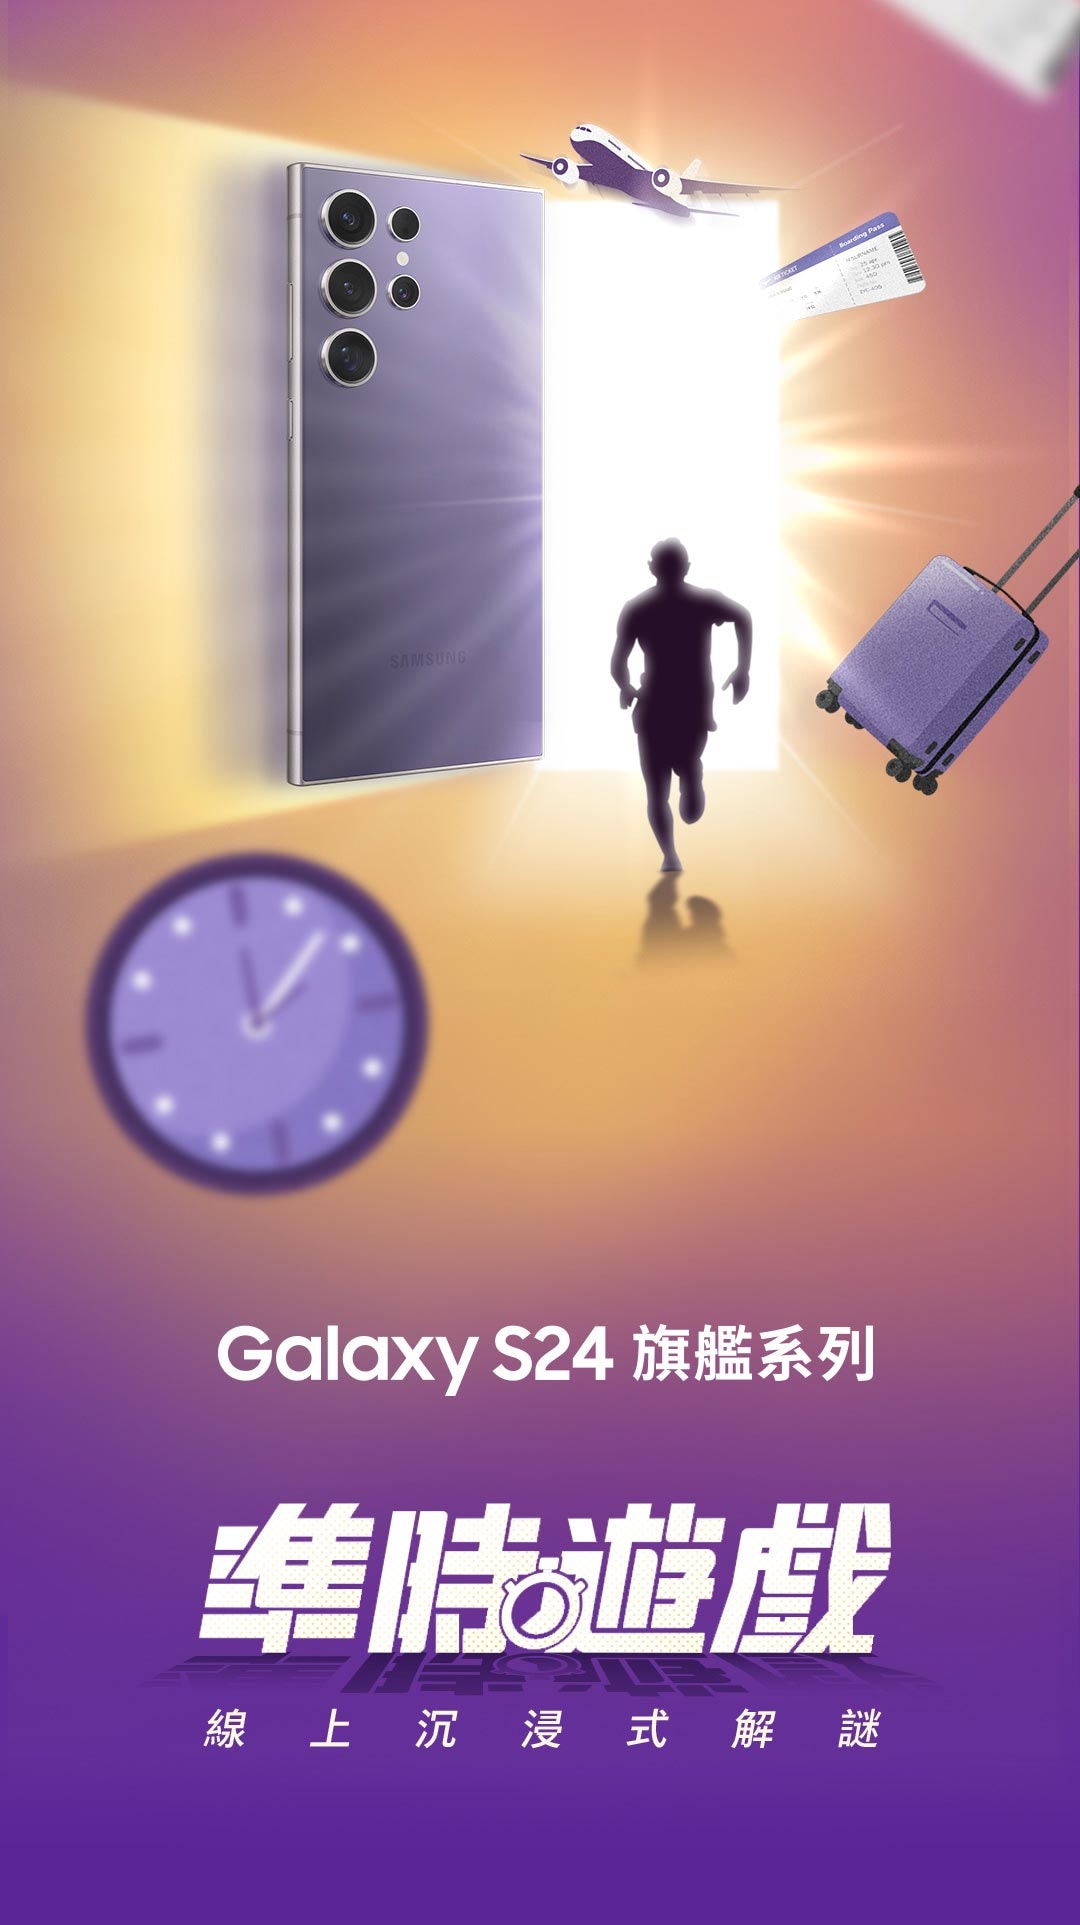 Galaxy S24 旗艦系列 準時遊戲 密室逃脫